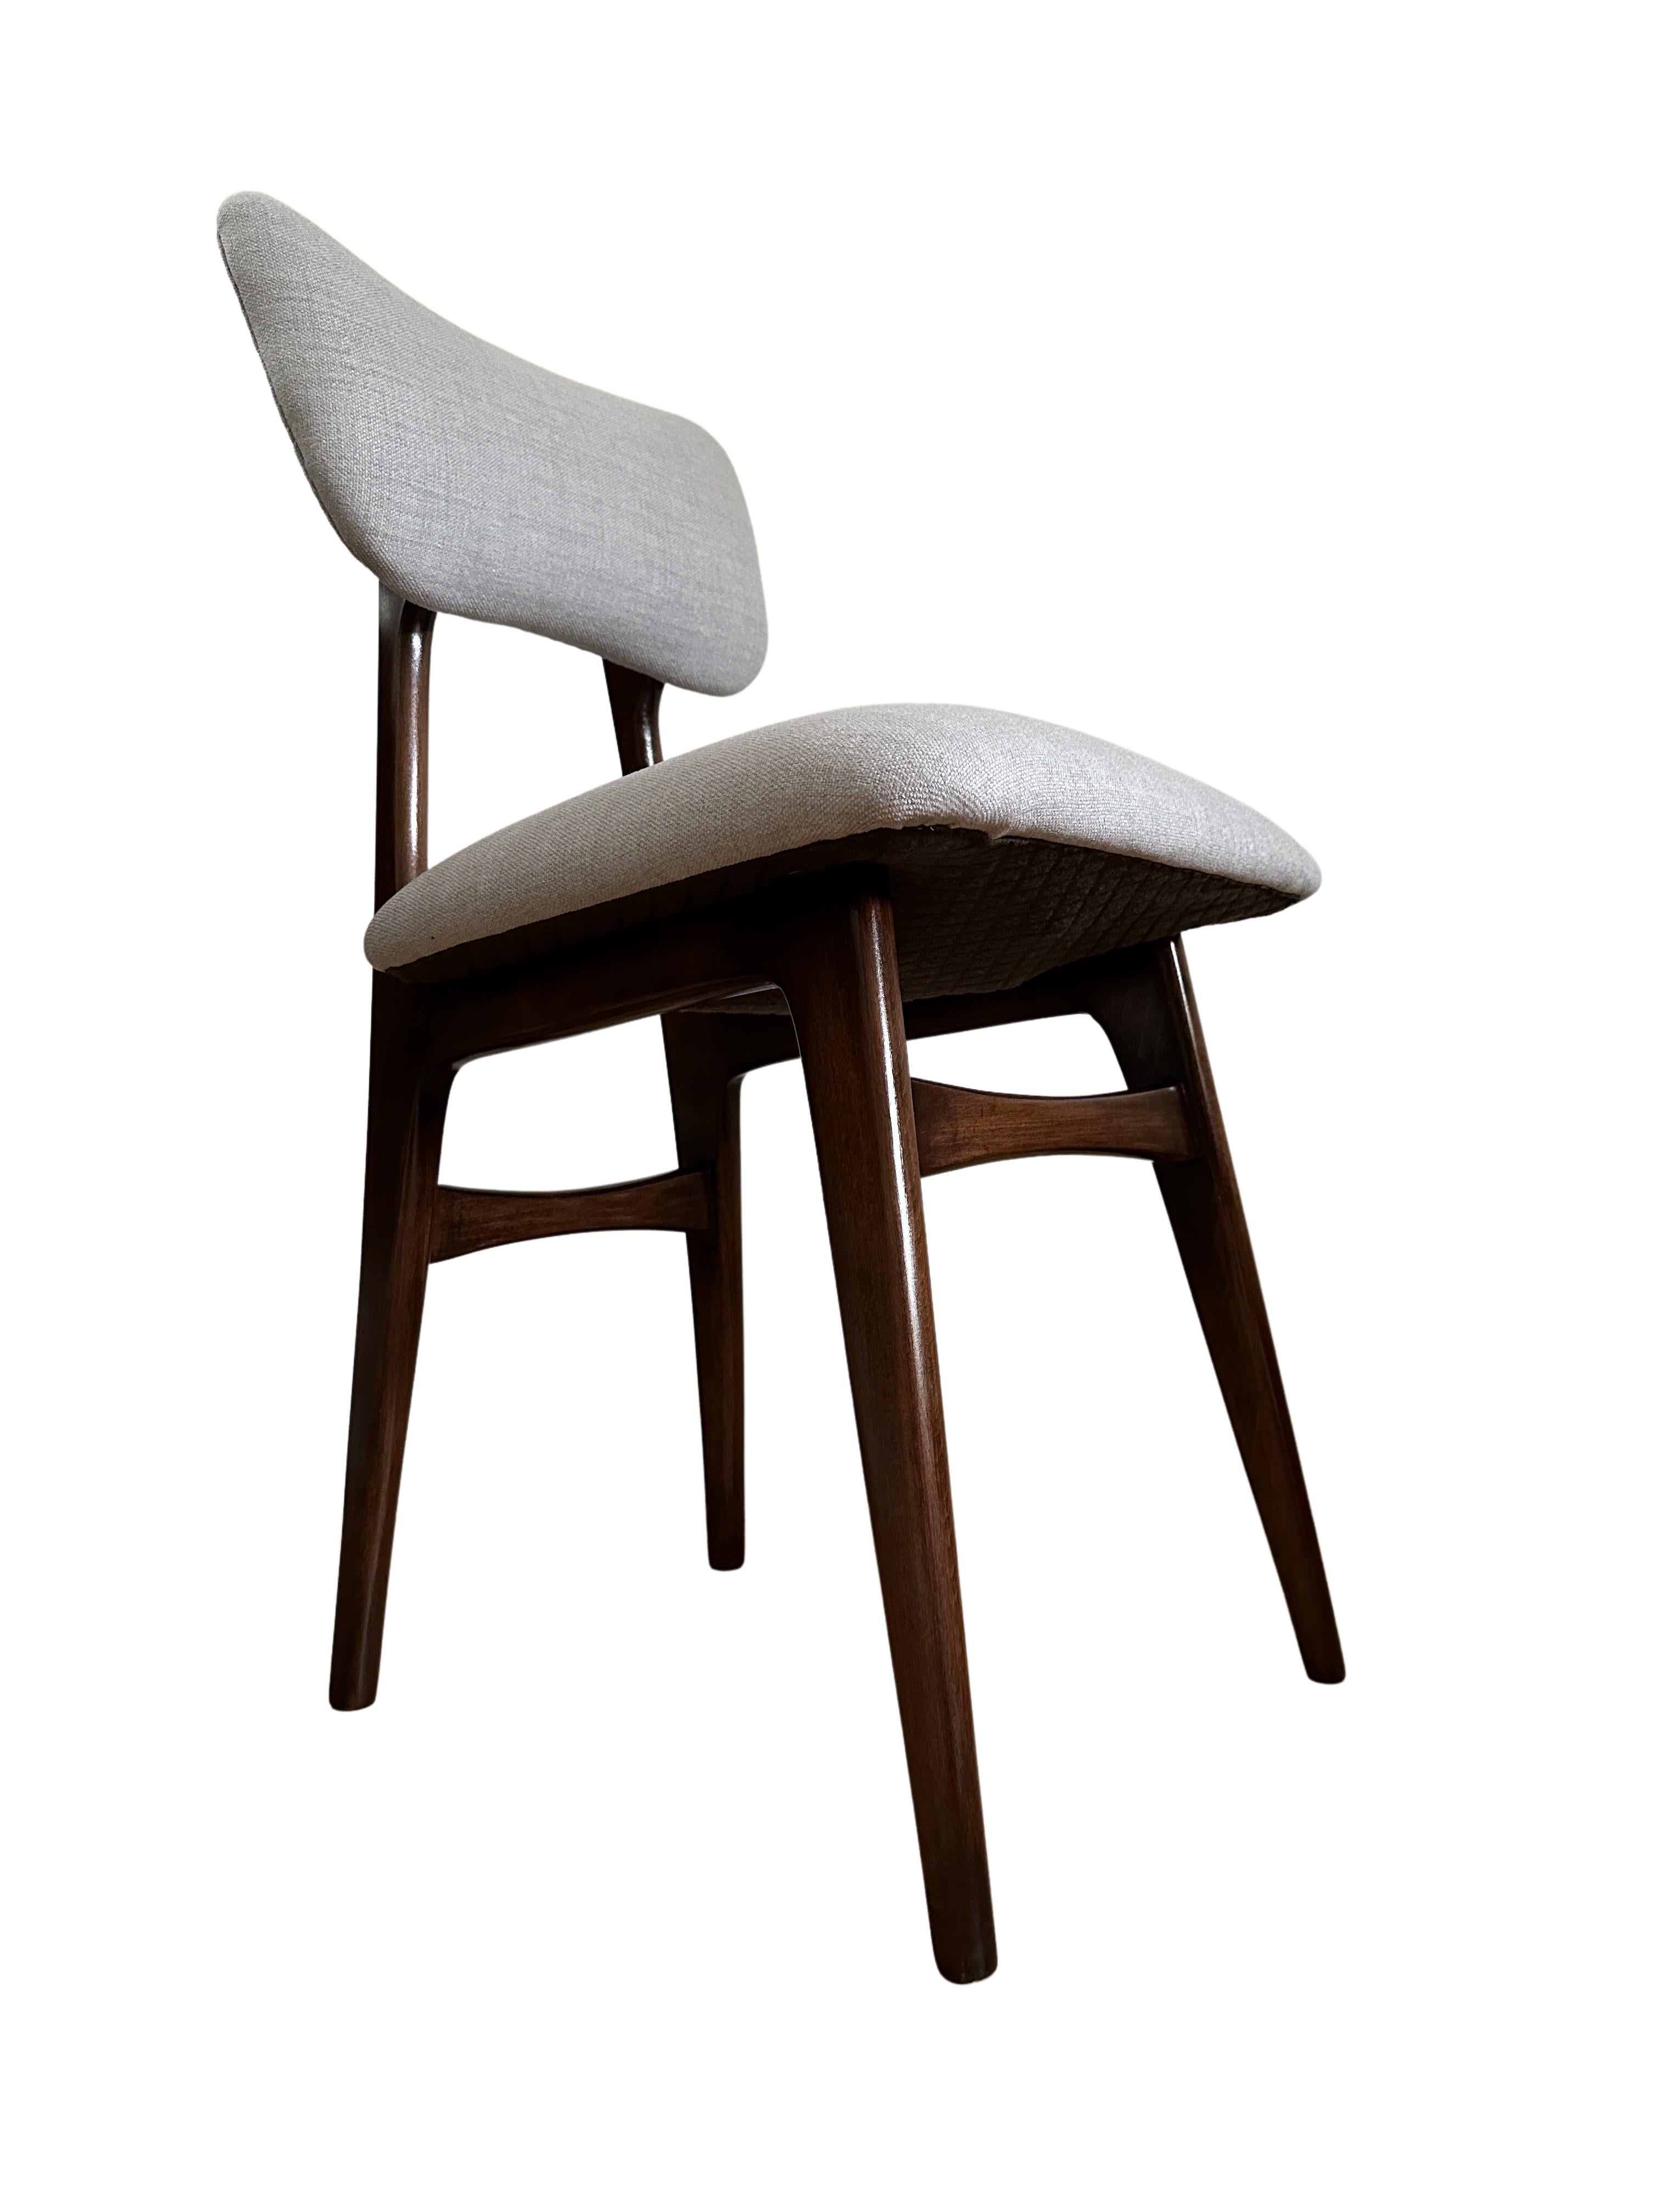 Einzigartiges Set aus zwei Stühlen, die in den 1960er Jahren in Polen hergestellt wurden, entworfen von Rajmund Halas. 

Die Polsterung besteht aus einem hochwertigen Stoff mit einer interessanten Struktur aus dicht gewebtem Segeltuch, das sich